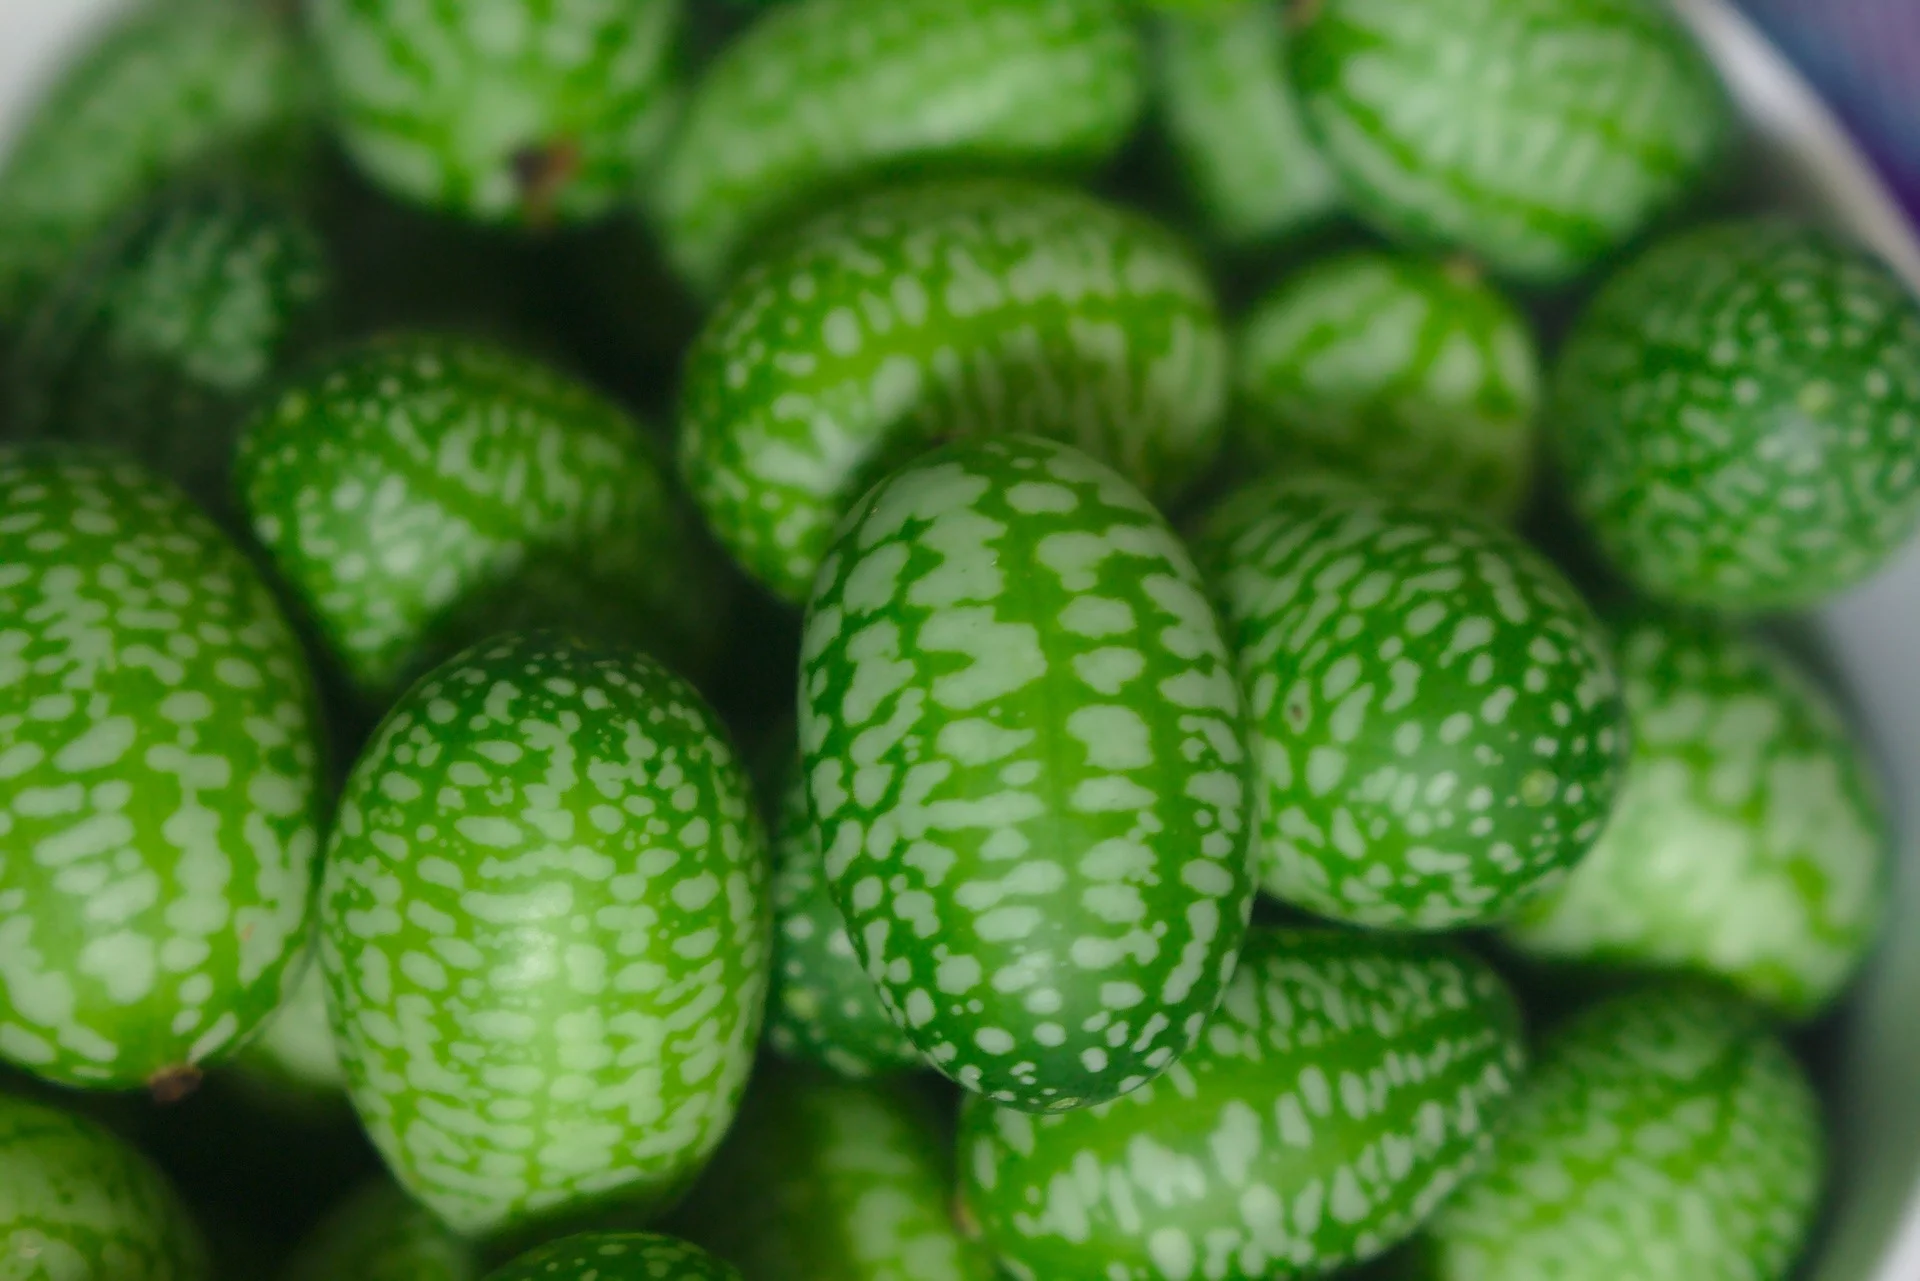 Achetez maintenant des graines de fruitiers Melon souris Melothria ' Cucamelon' 3 m² - Semences de fruits